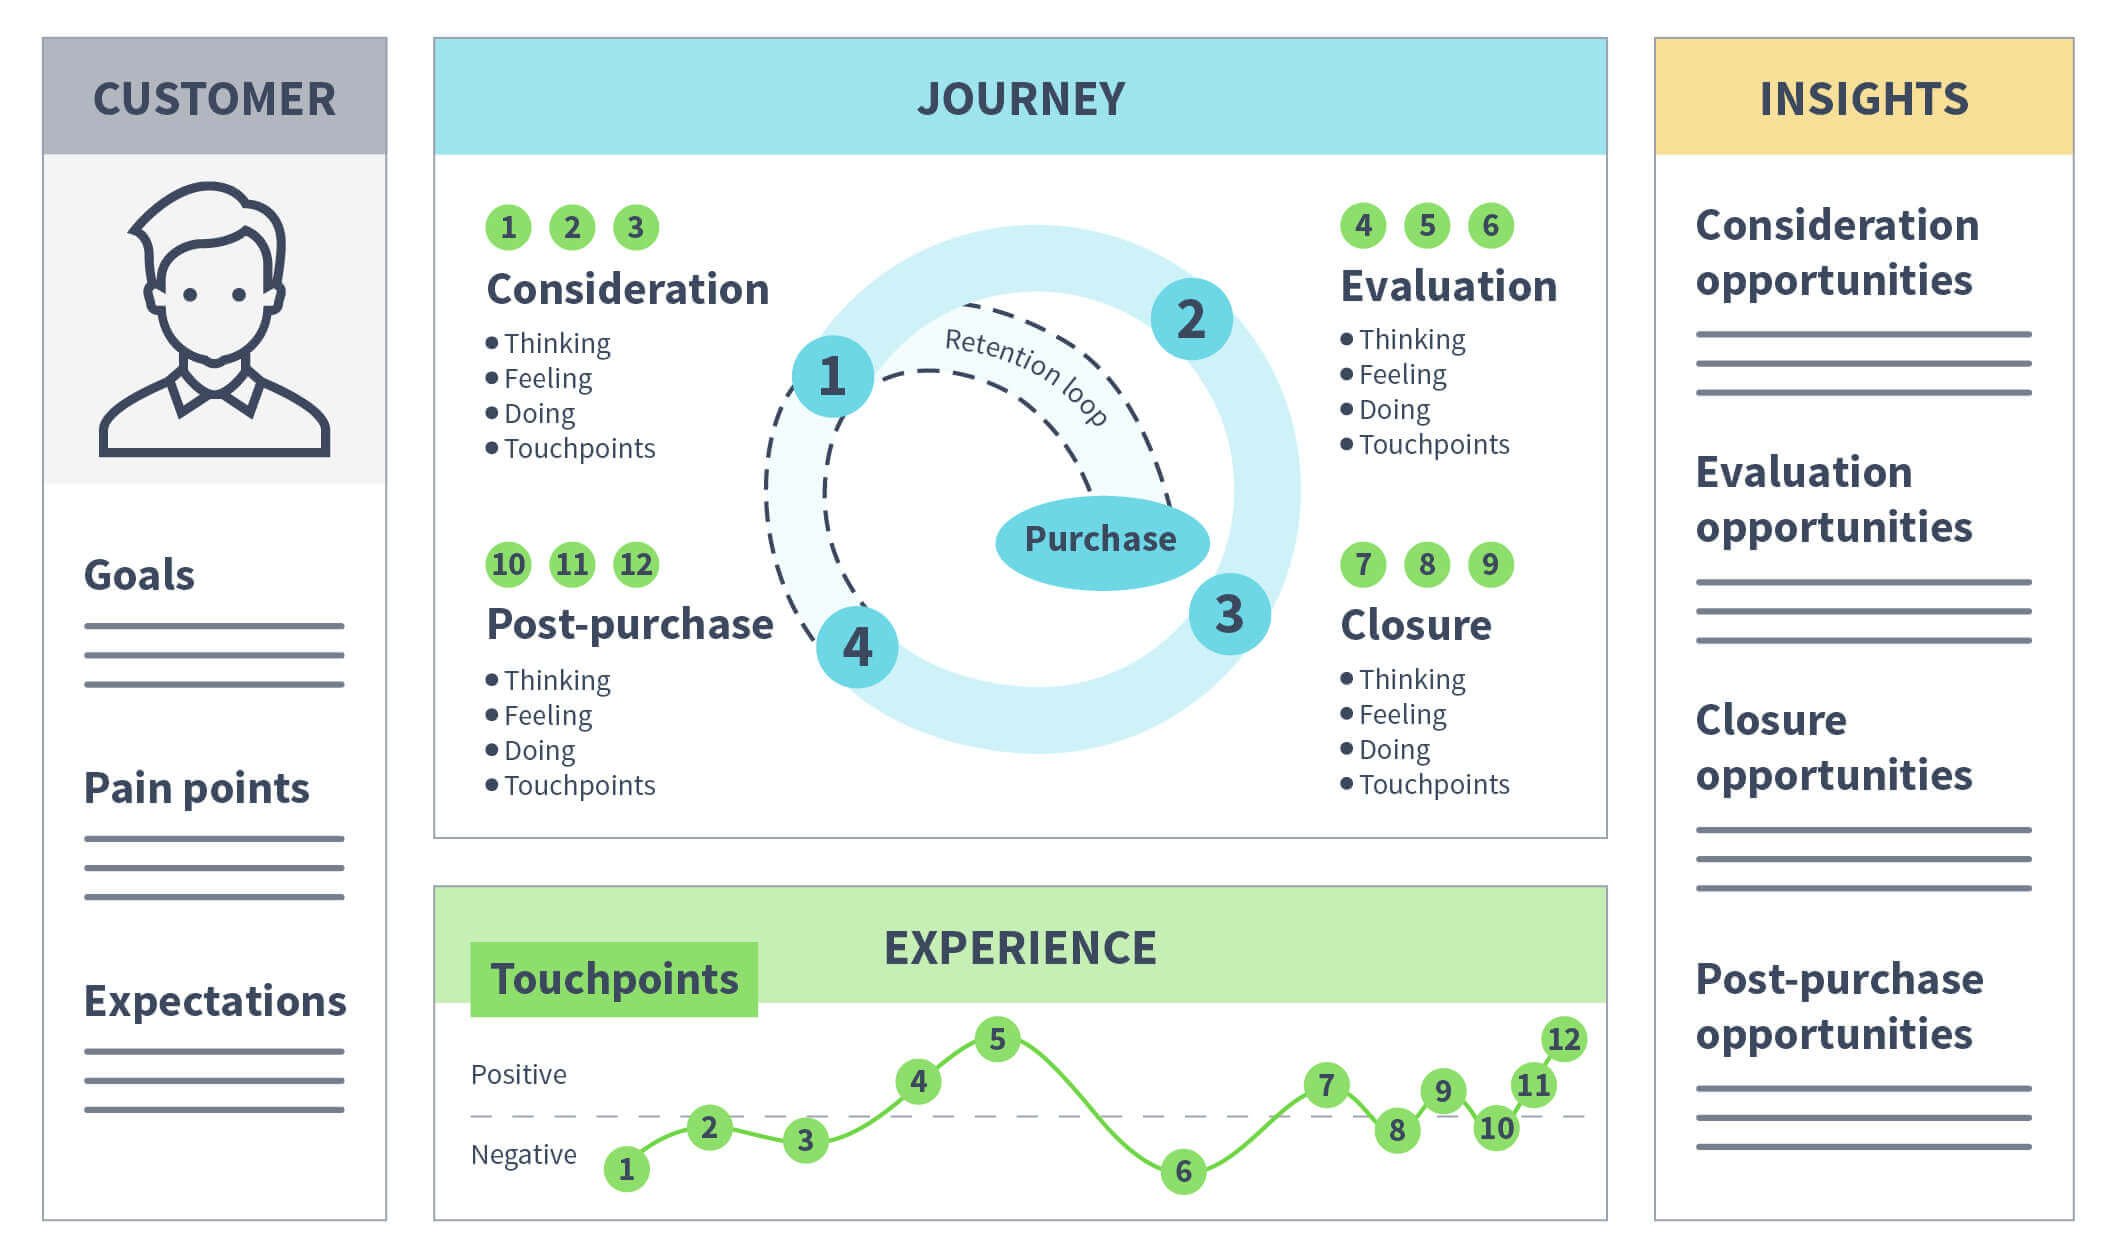 customer experience journey adalah